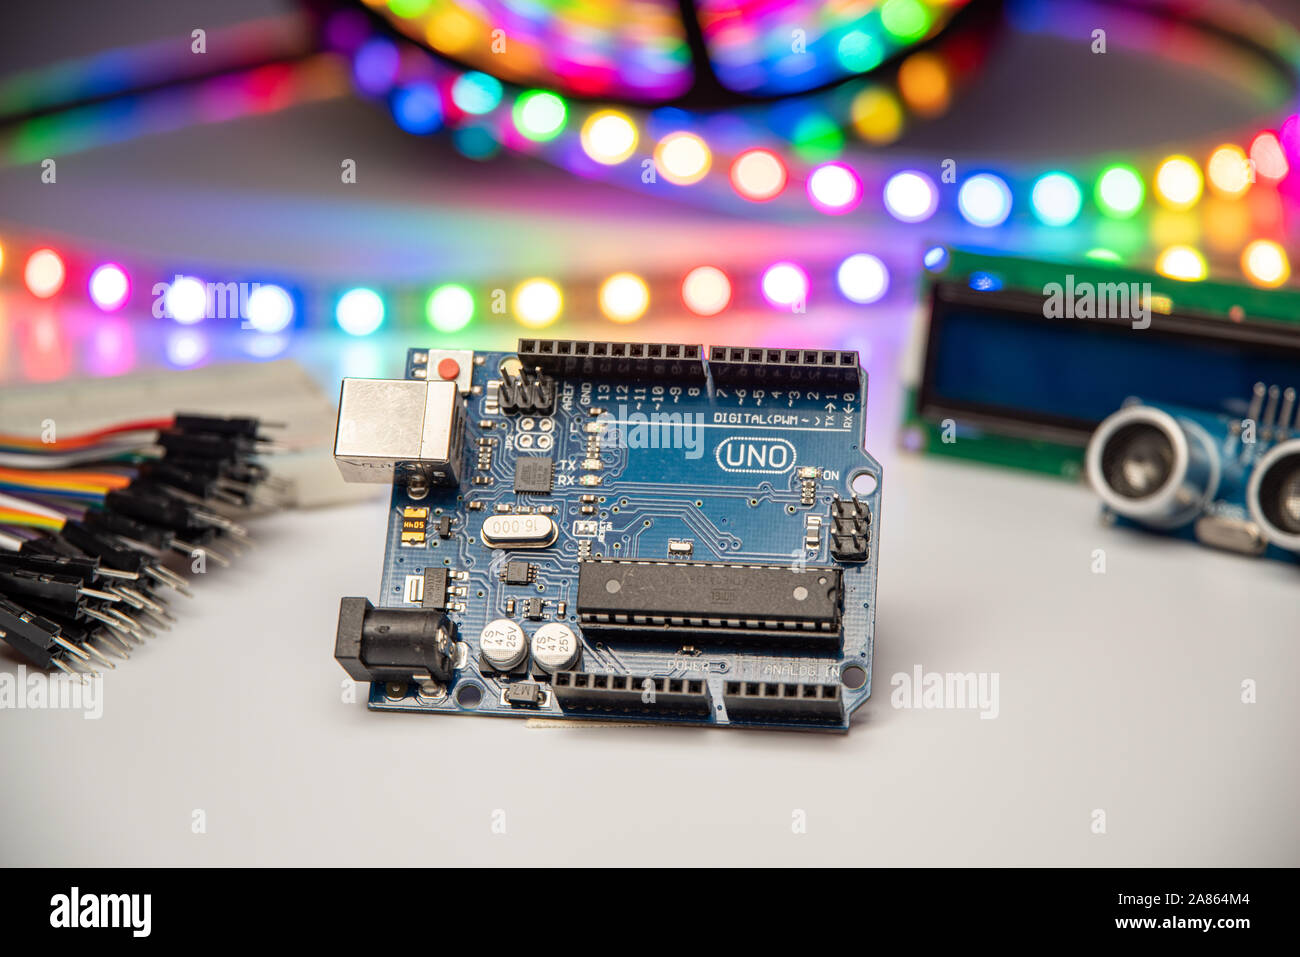 Arduino Uno angezeigt mit LED-Streifen, Überbrückungskabel, steckbrett, LCD-Display, und Ultraschallsensor. Stockfoto